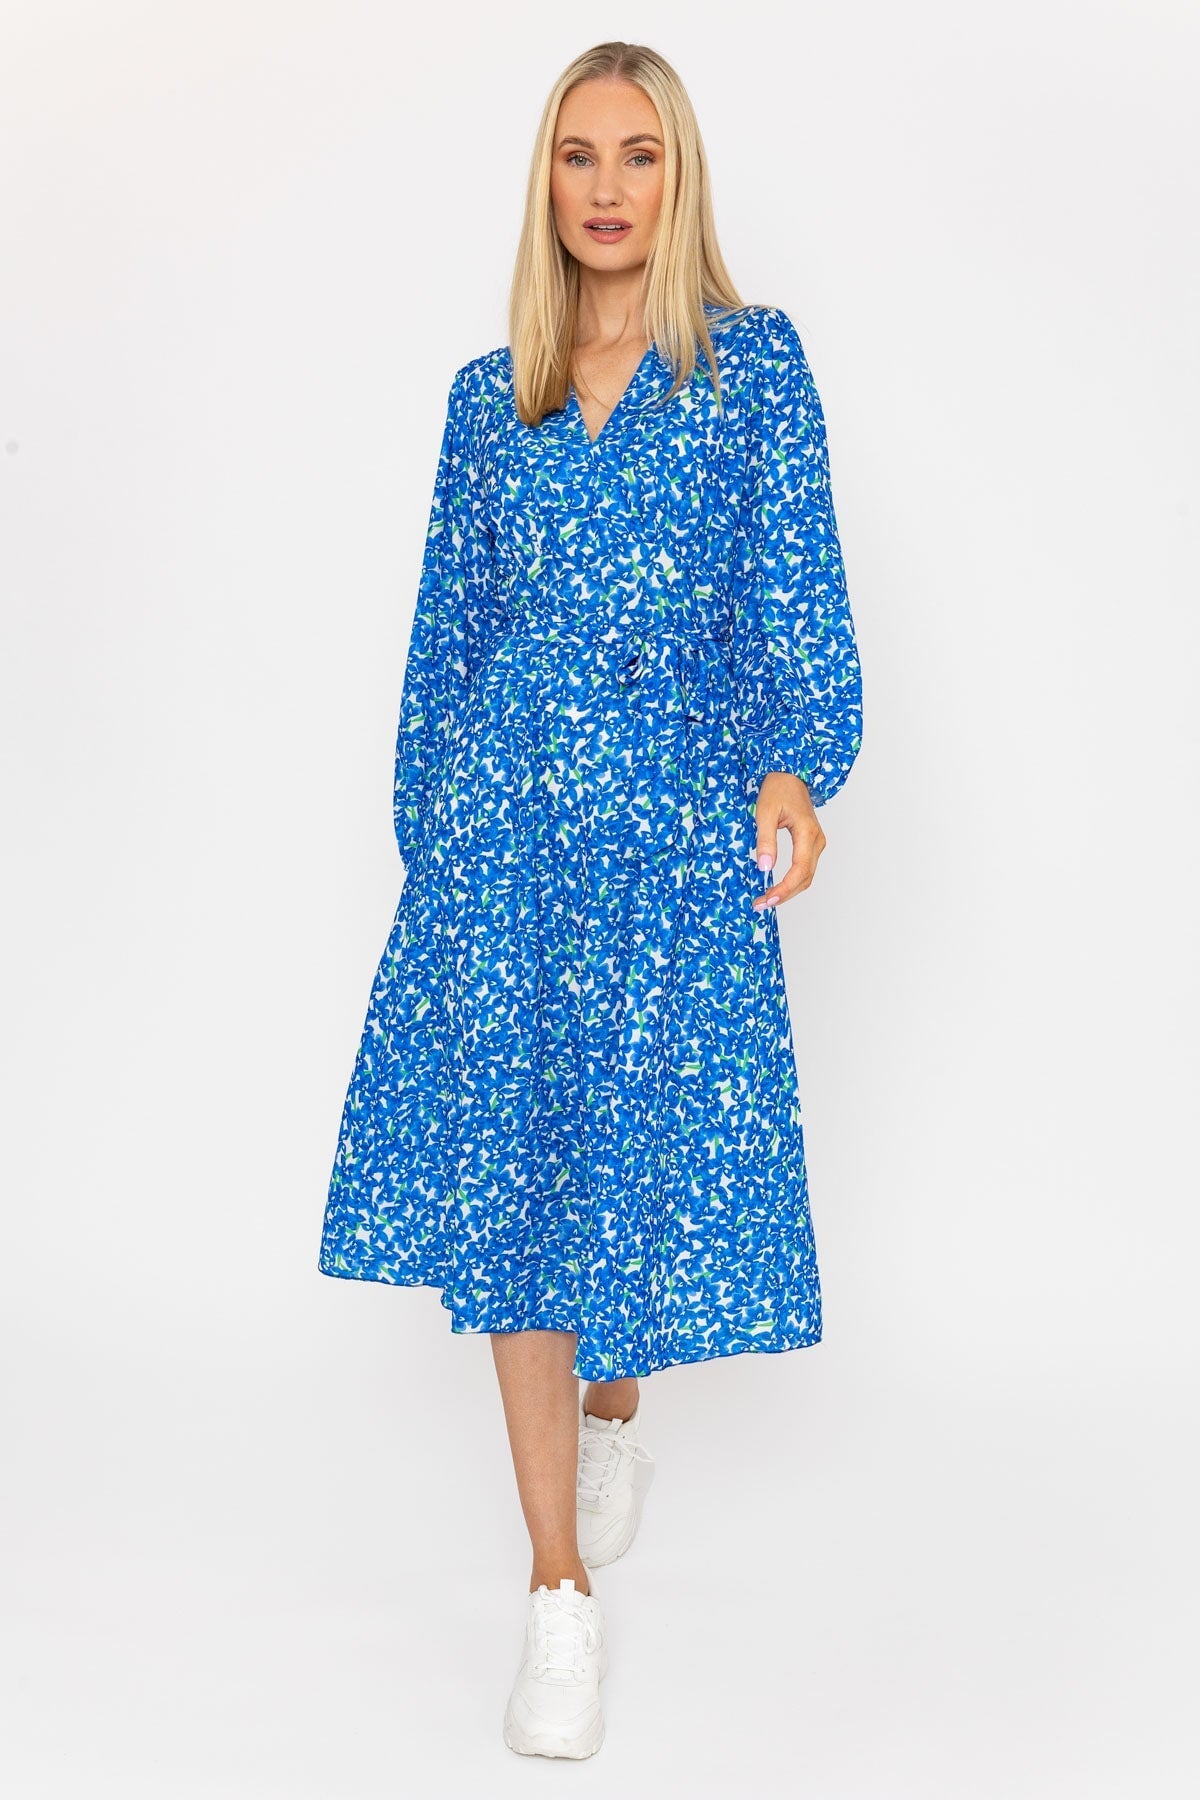 Sinead Midi Dress in Blue Print